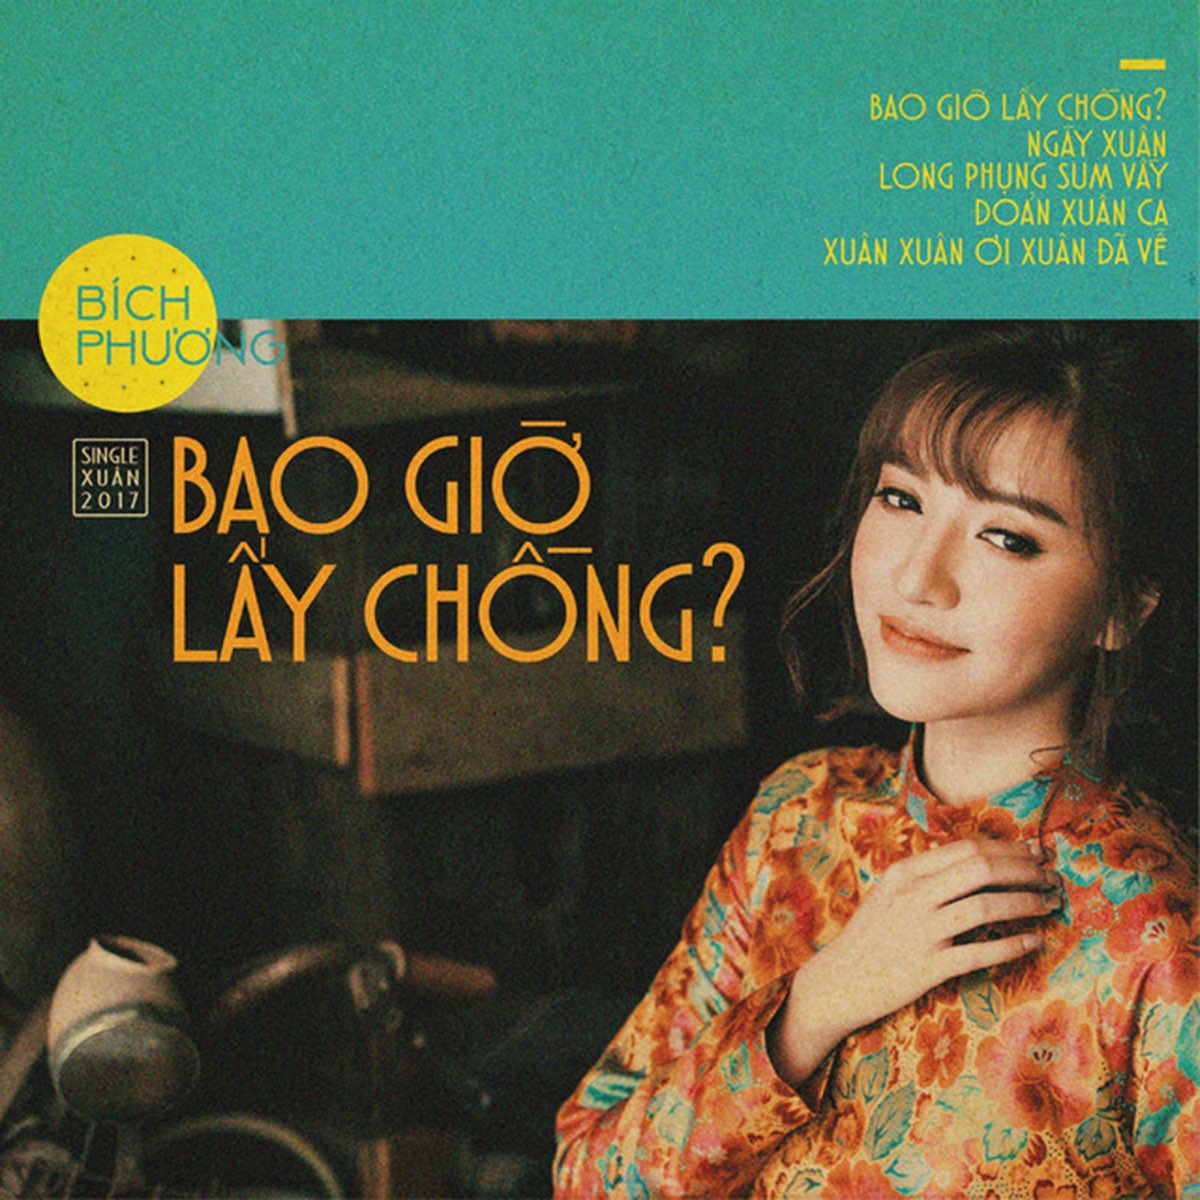 ‎Bao Giờ Lấy Chồng - Single - Album by Bích Phương - Apple Music